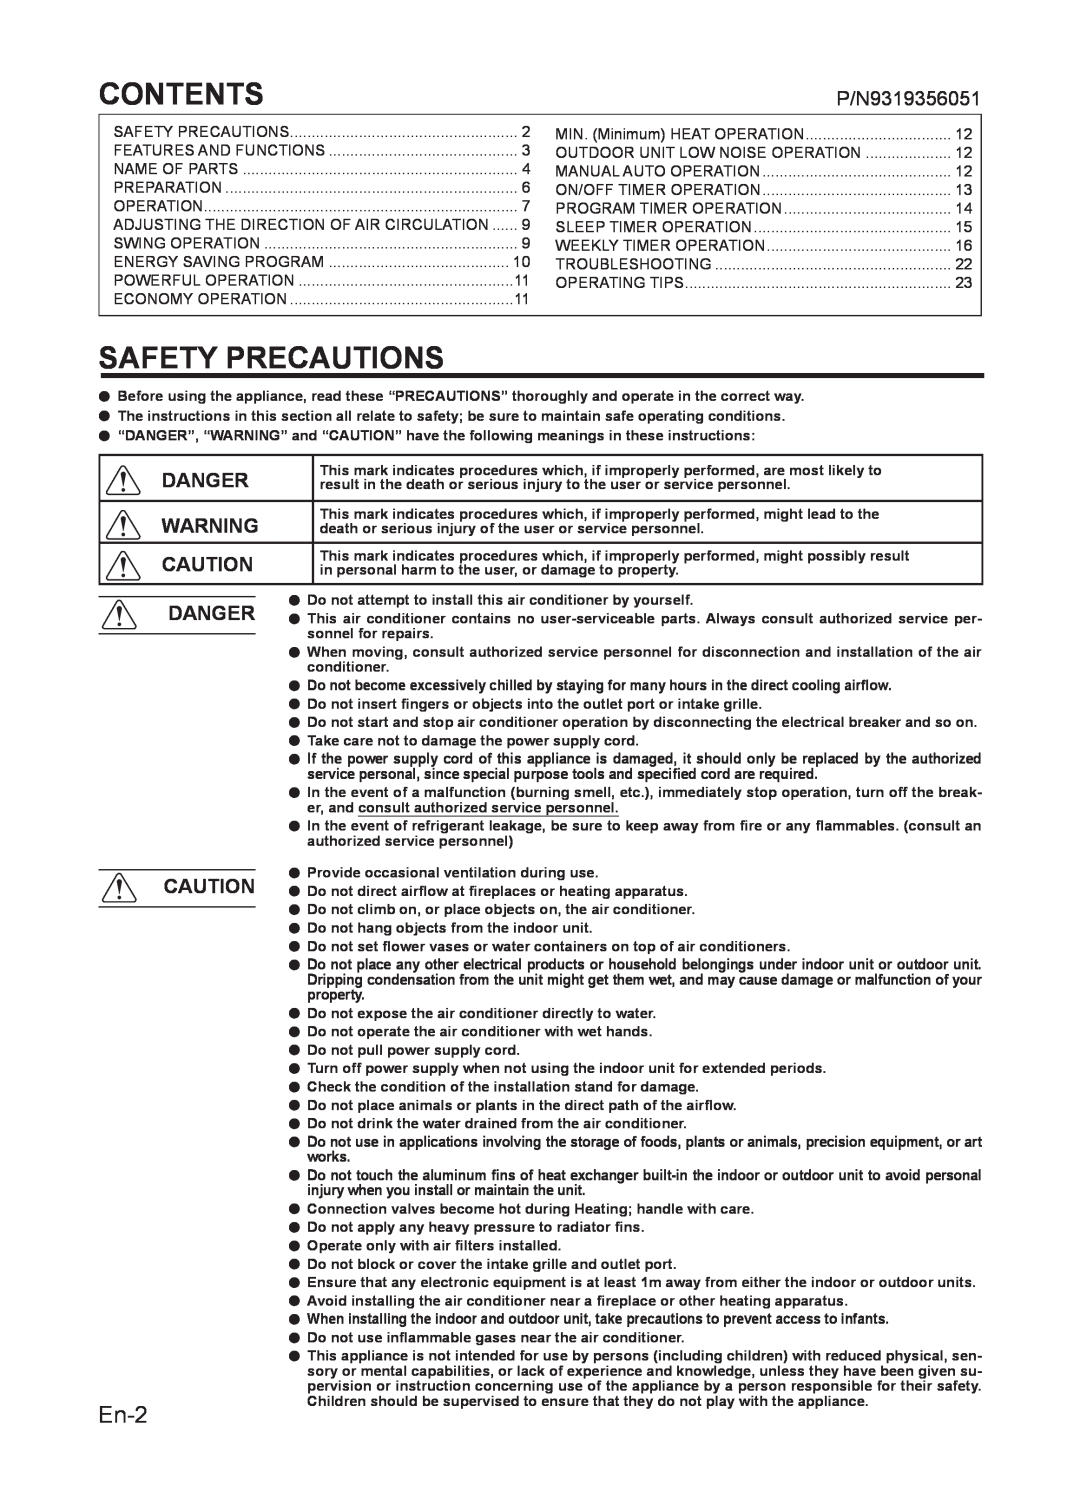 Fujitsu AIR CONDITIONER manuel dutilisation Contents, Safety Precautions, En-2, P/N9319356051 